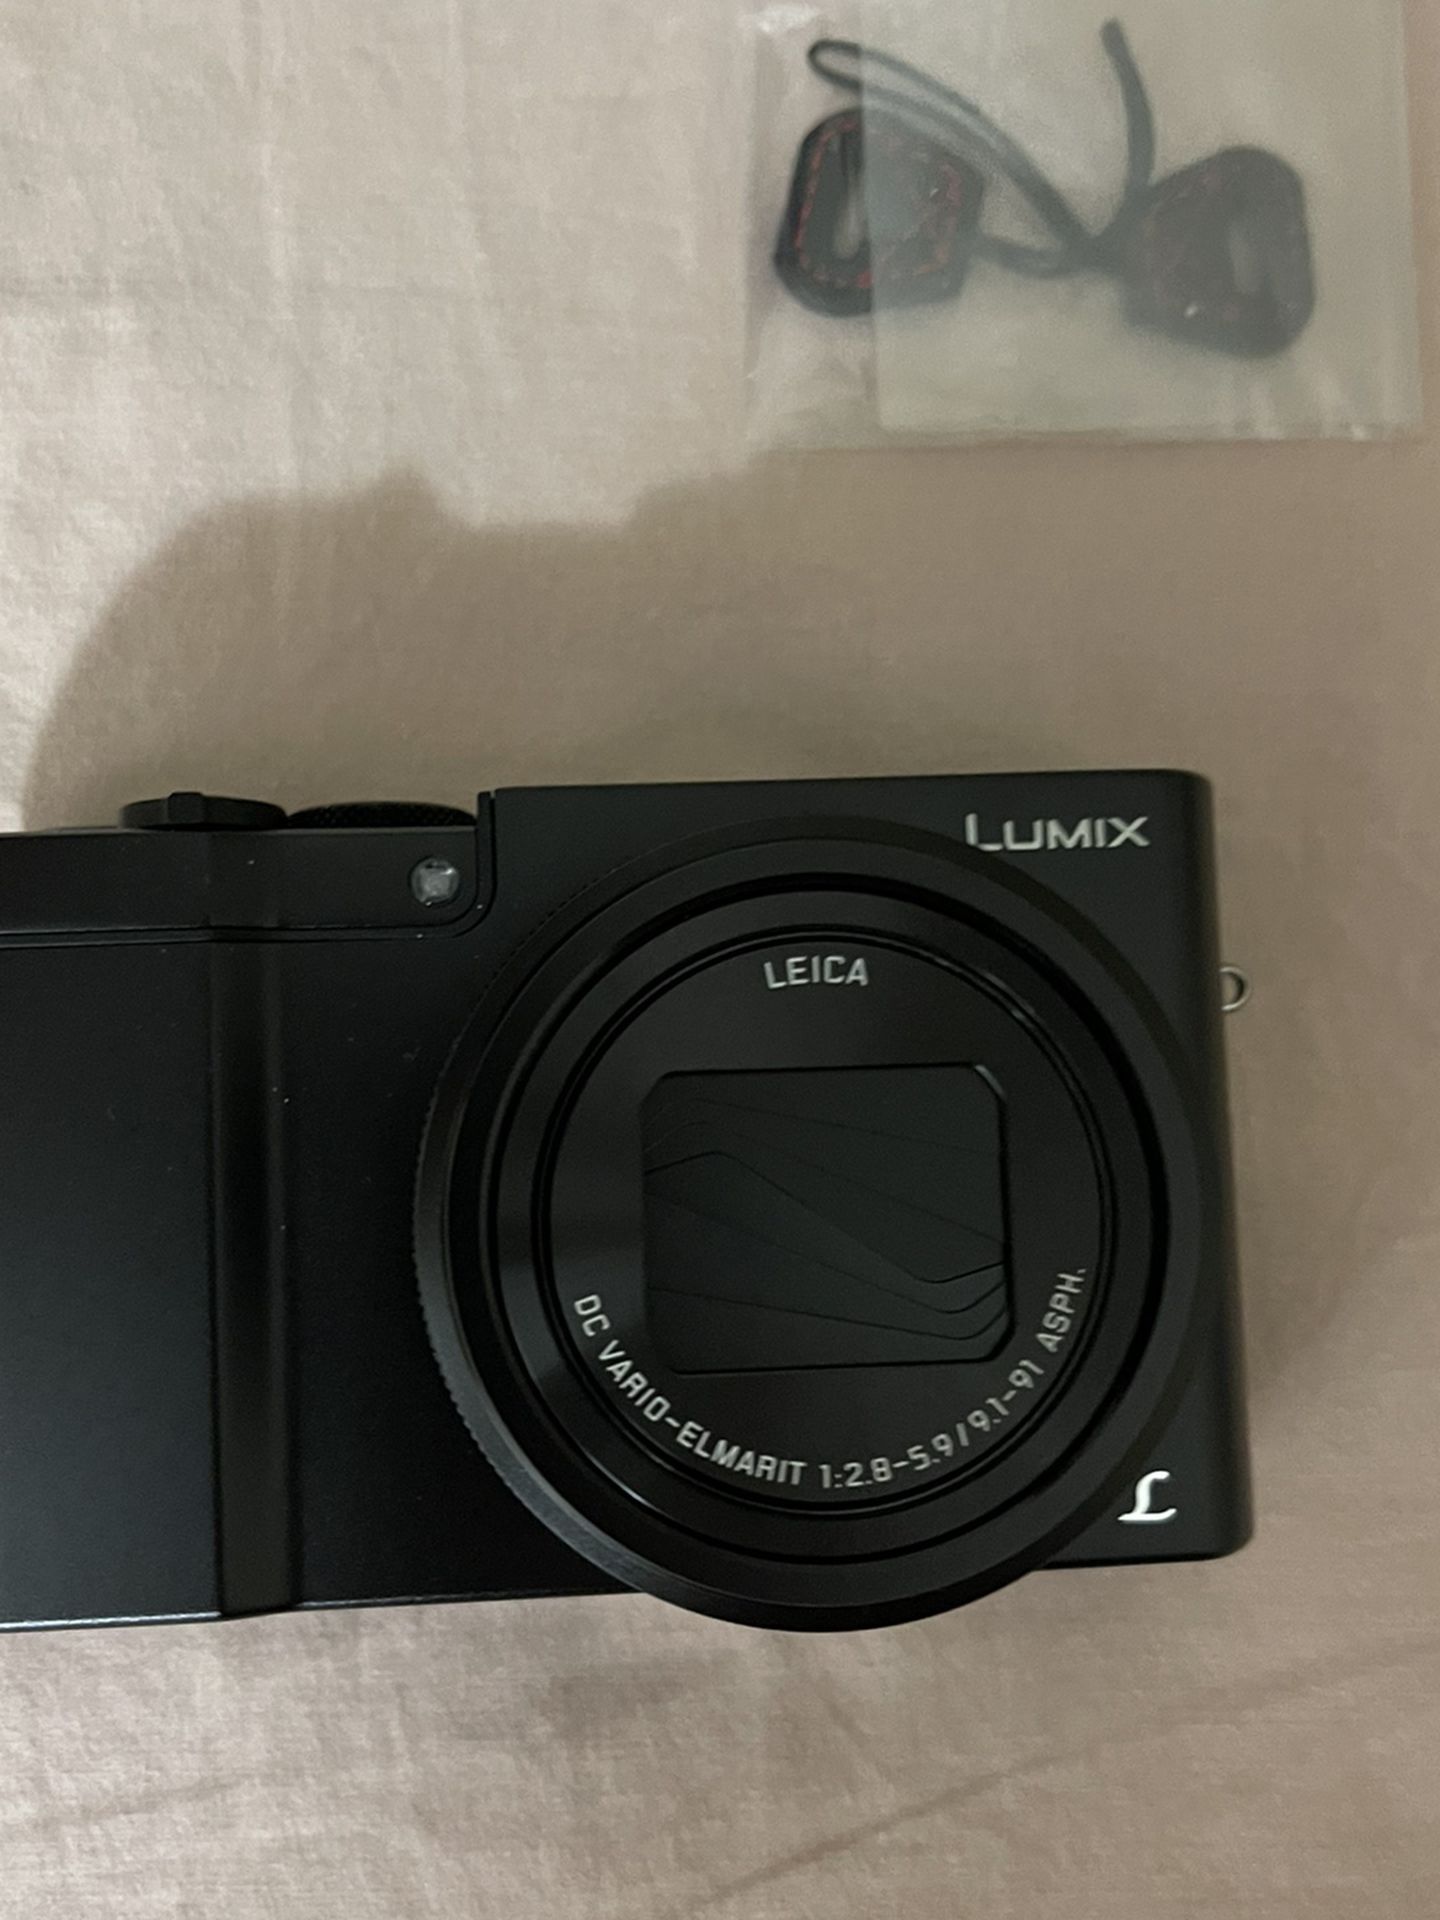 Panasonic LUMIX With Leica Lens. Dmc-zs100